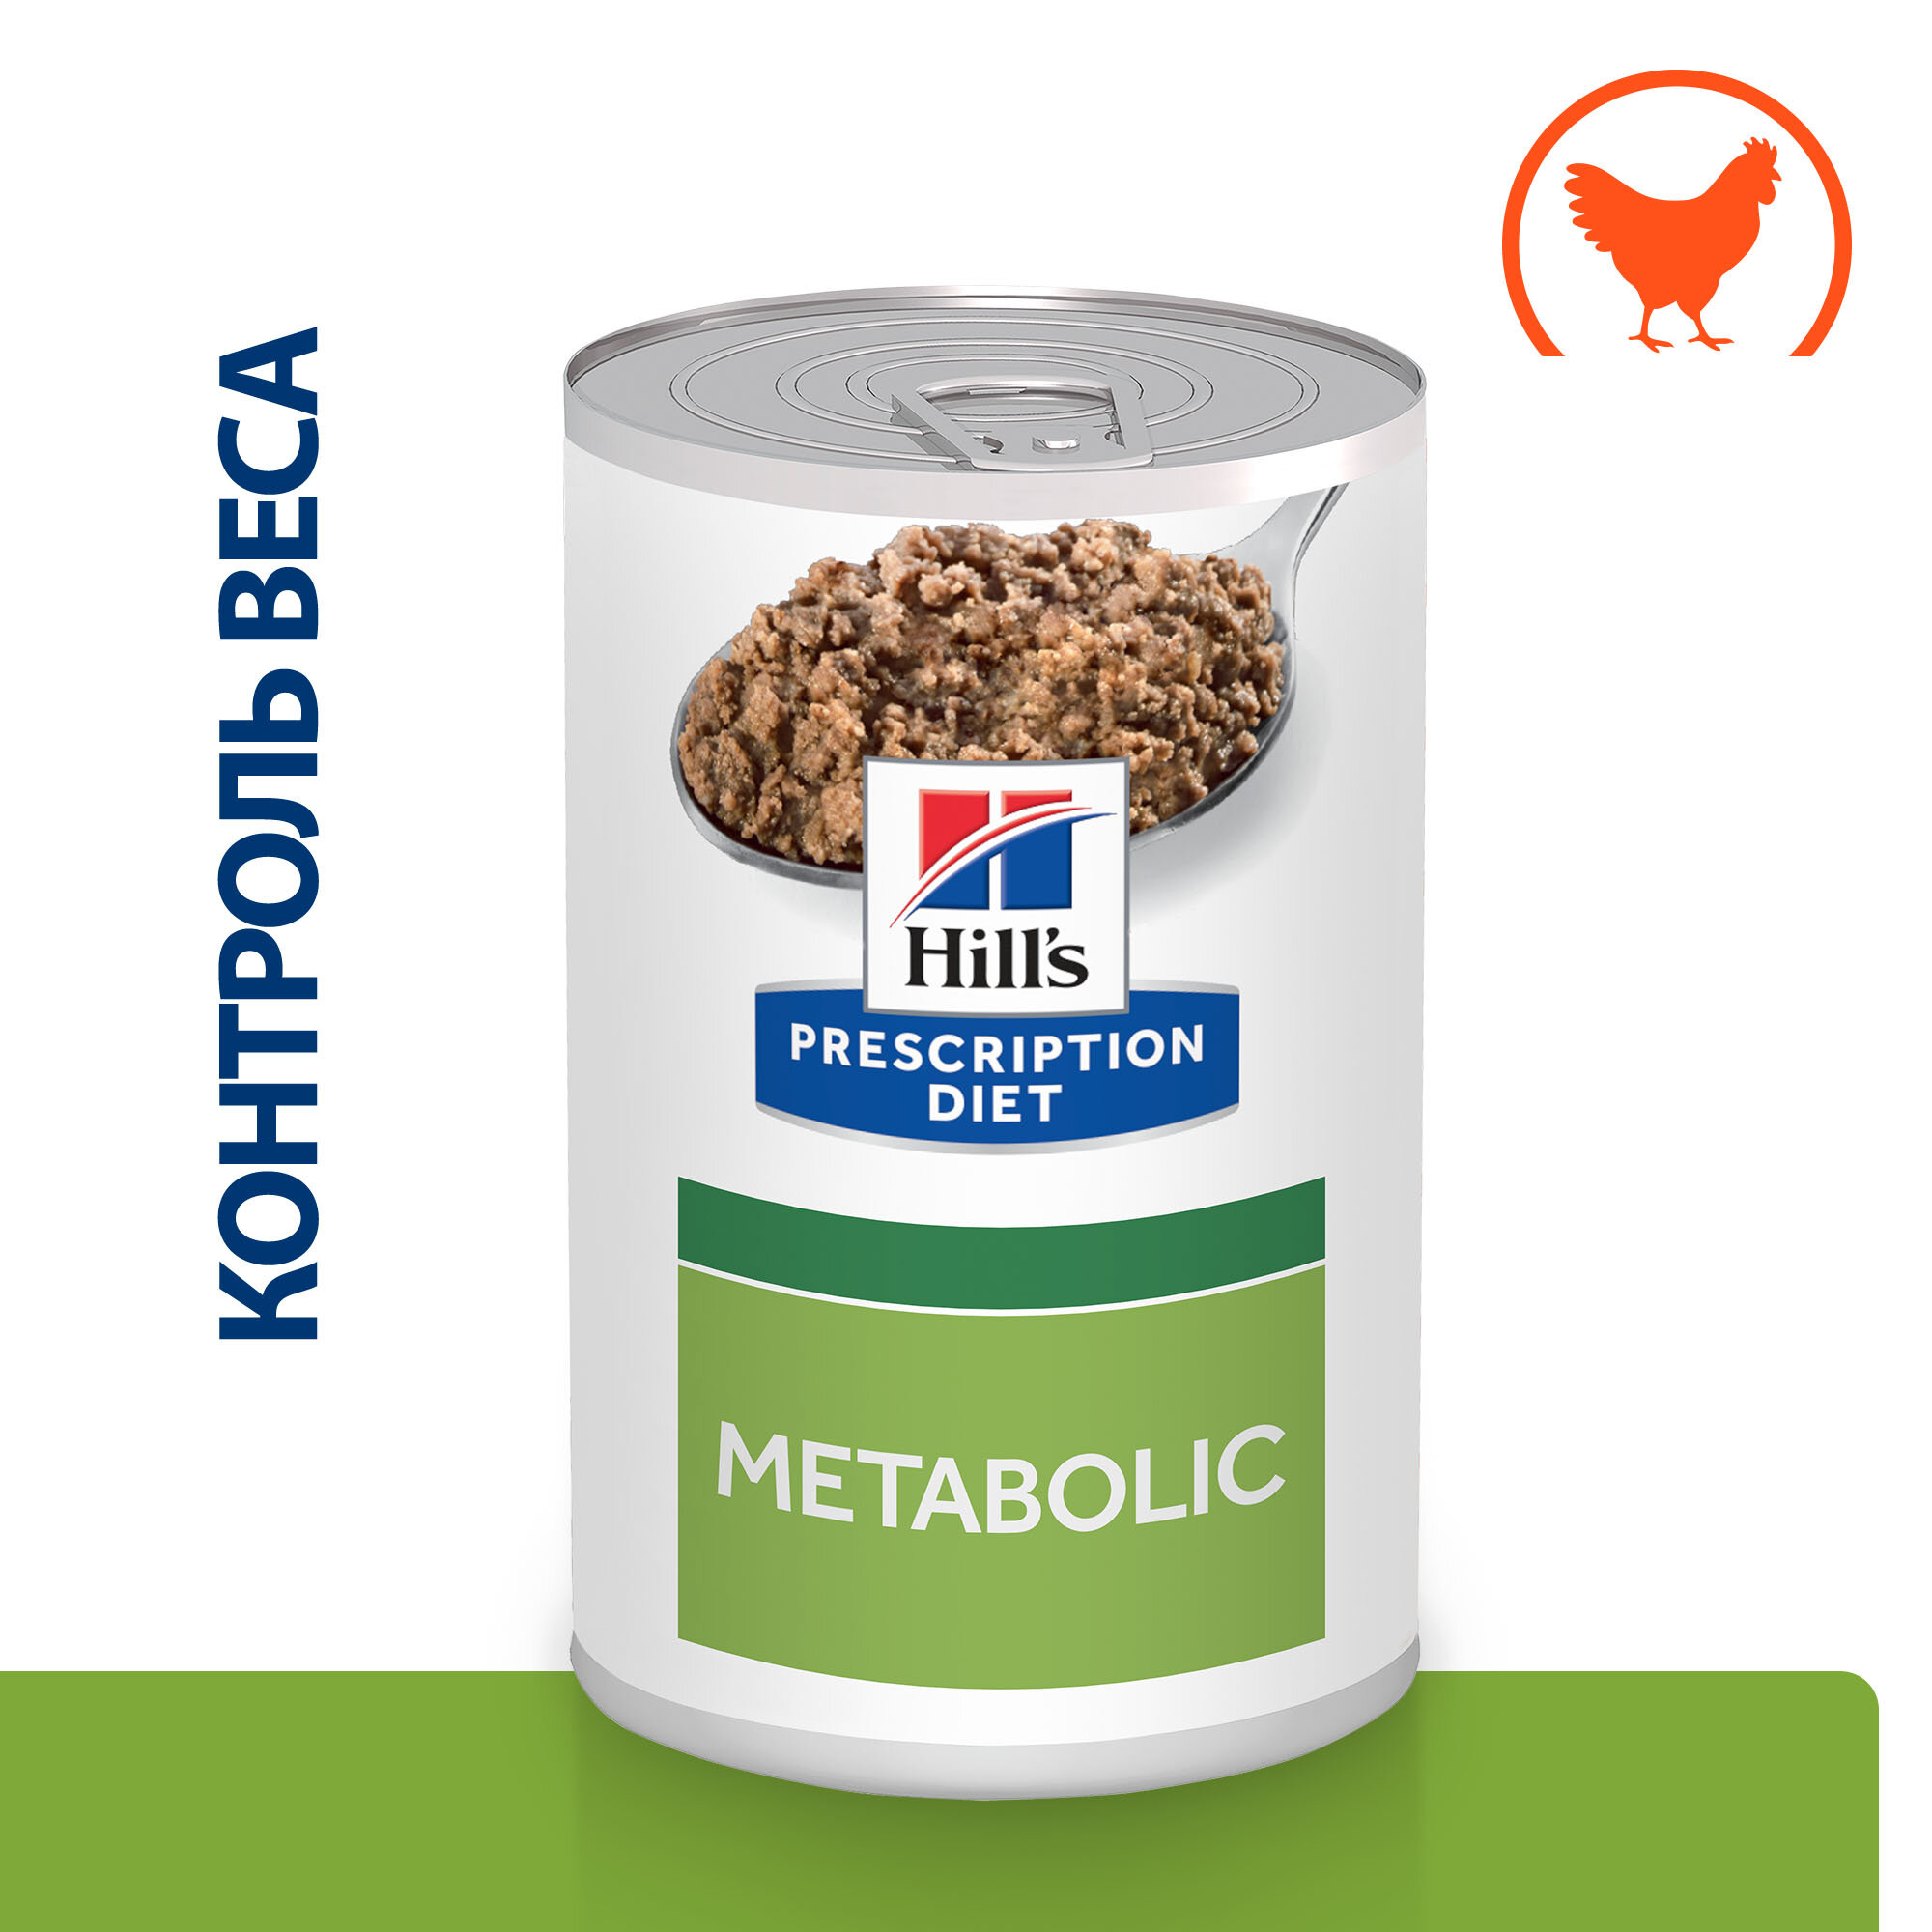 Hill's Prescription Diet Metabolic Weight Management консервы для собак диета для поддержания веса Курица 200 г. упаковка 12 шт